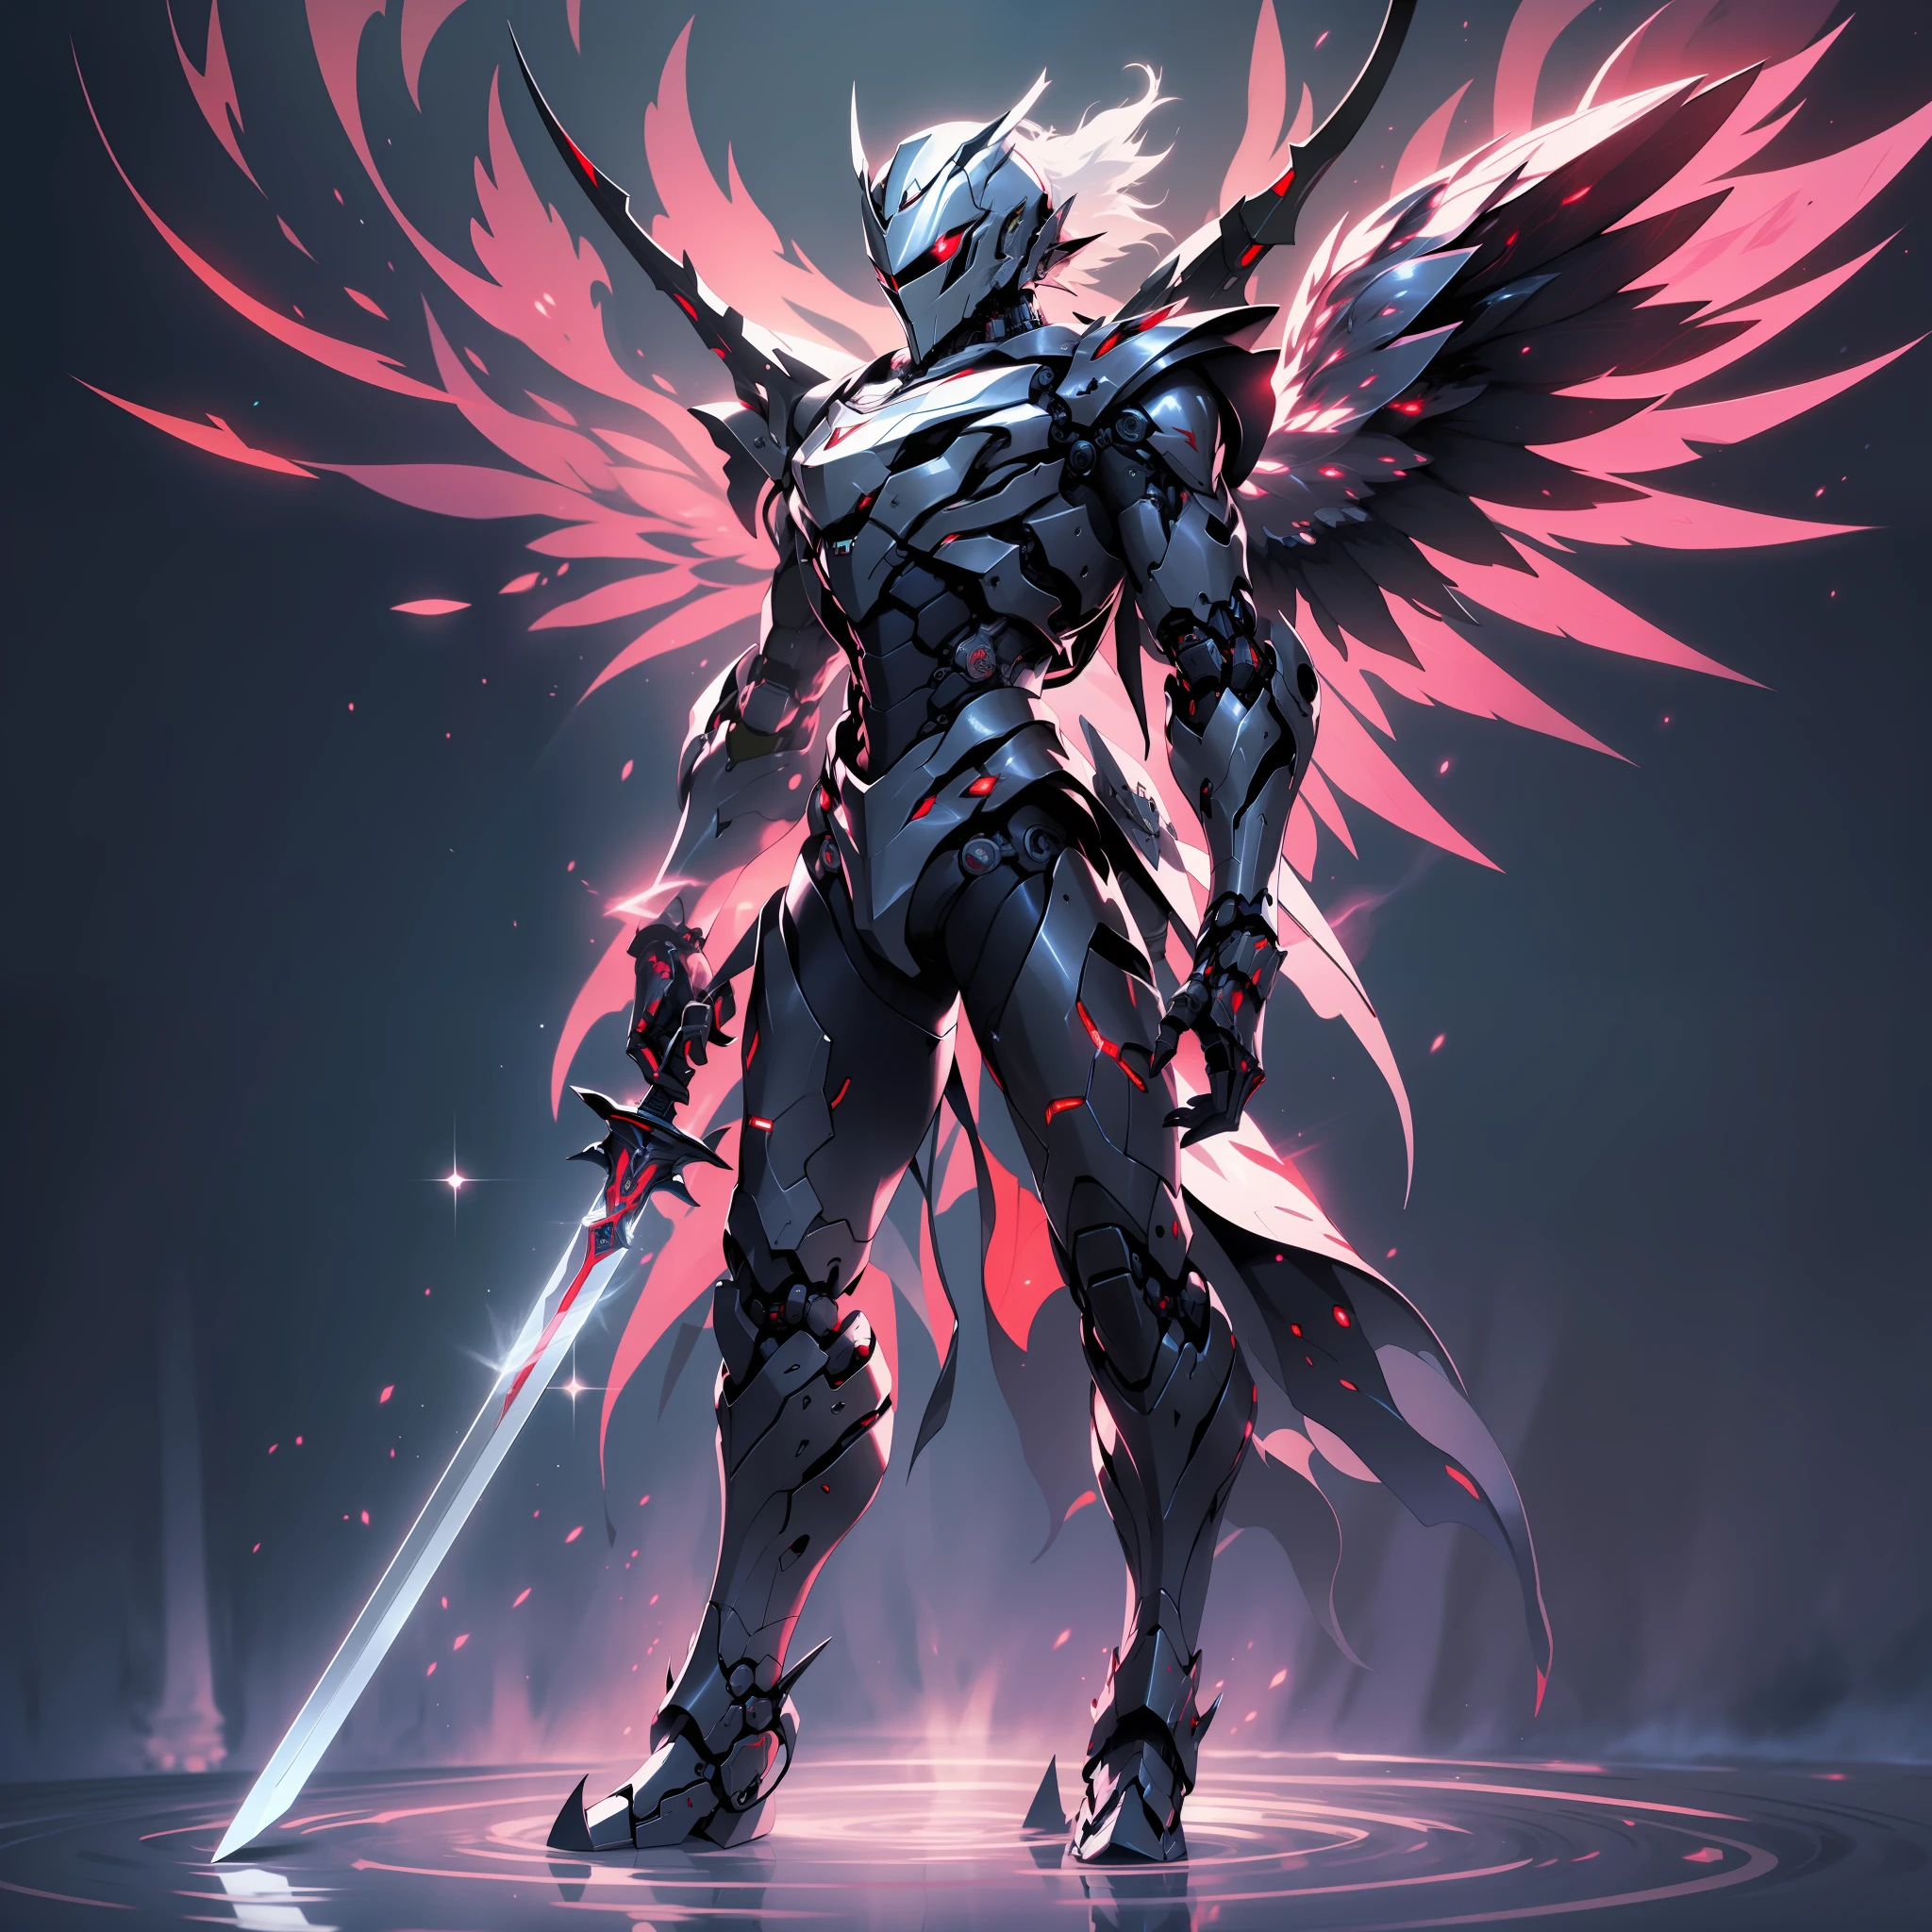 El caballero con la espada al frente tiene alas., luz reflejada, poder rojo, Brillantina, semi robot, no humano, luz oscura, brillando de nuevo